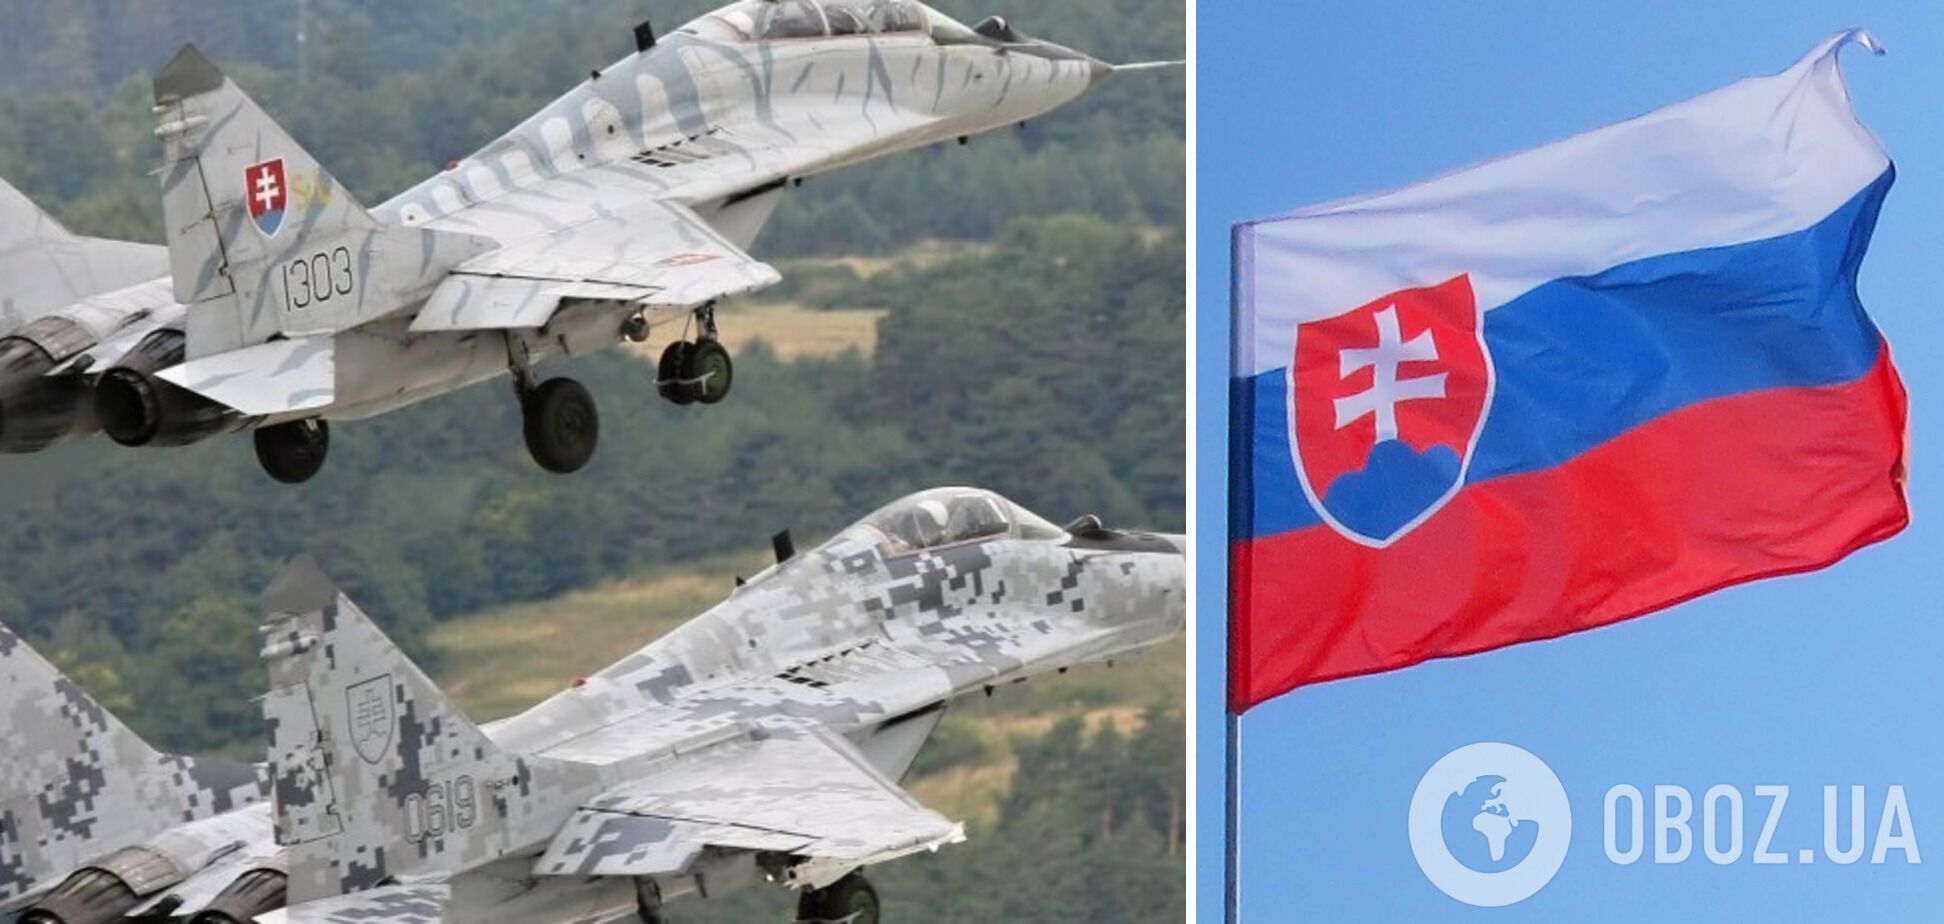 Словакия до конца лета может передать Украине 11 самолетов МиГ-29